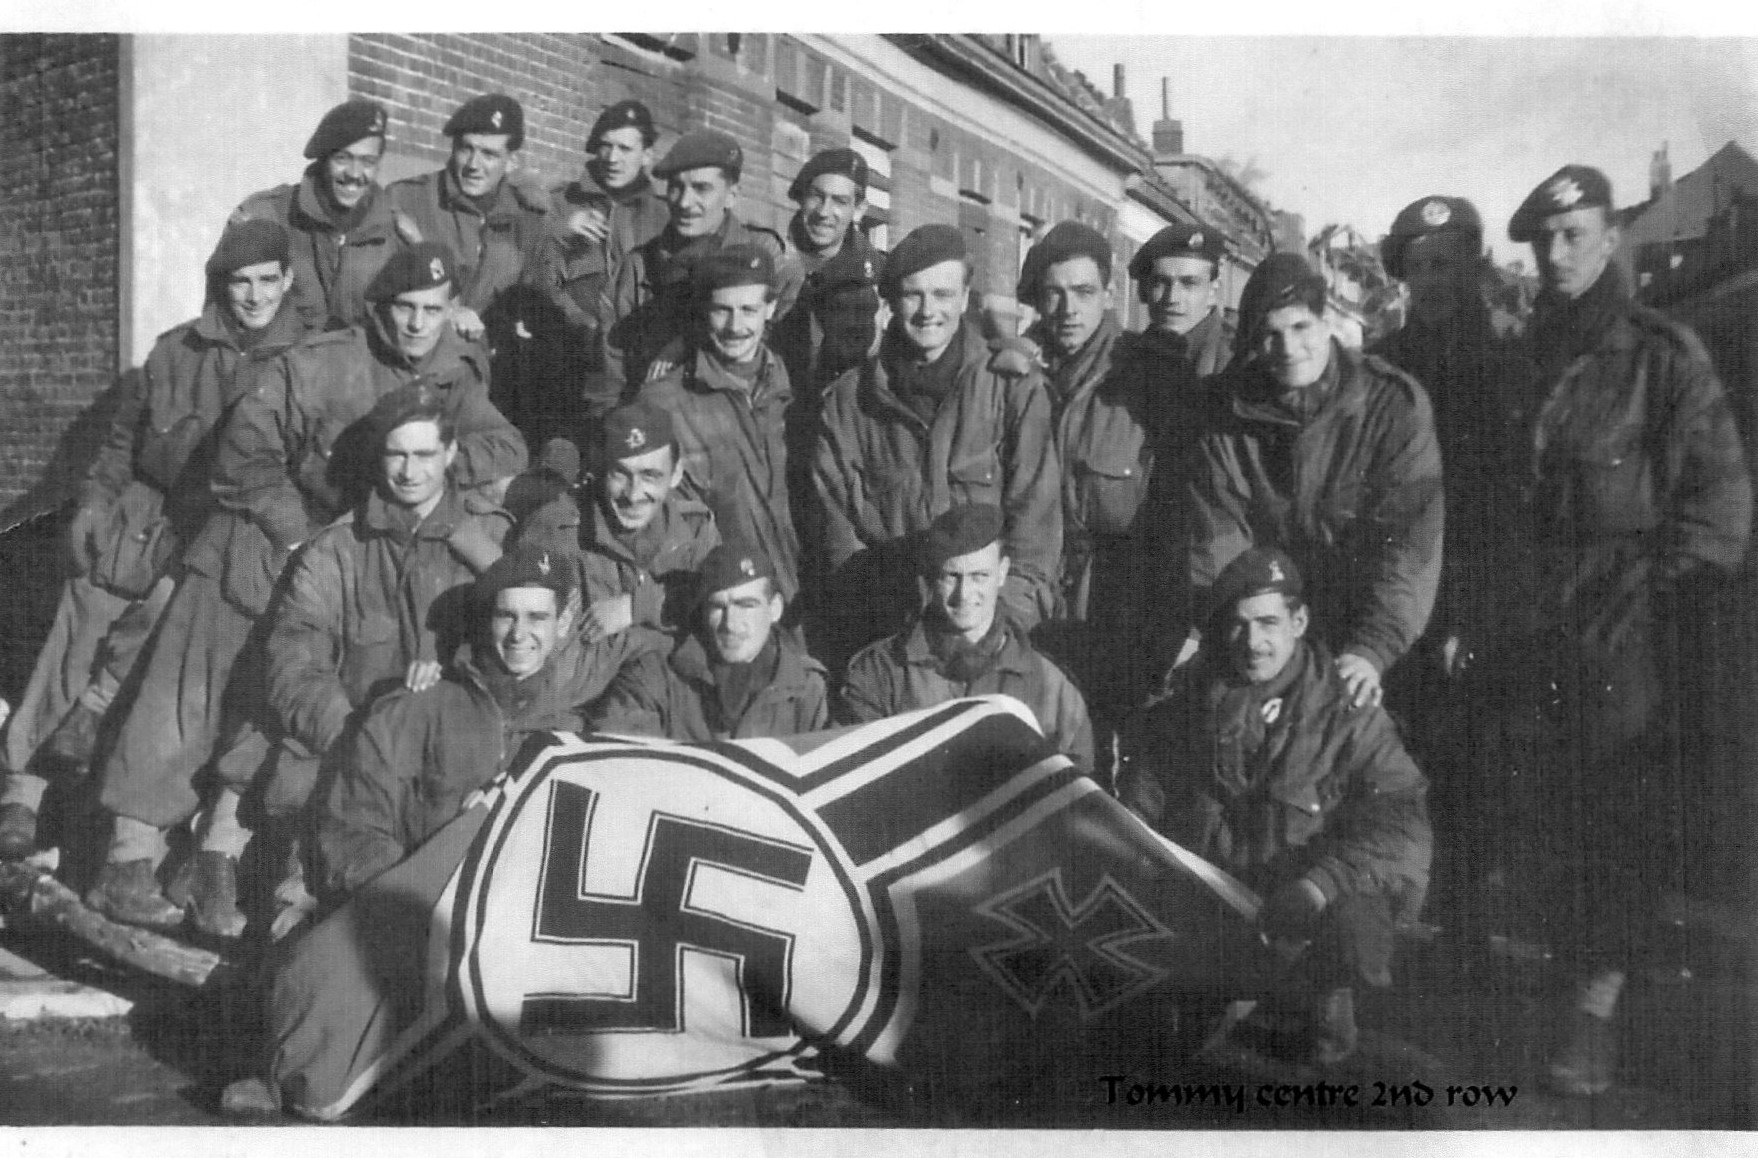 No 4 Commandos with captured flag after Vlissengen.